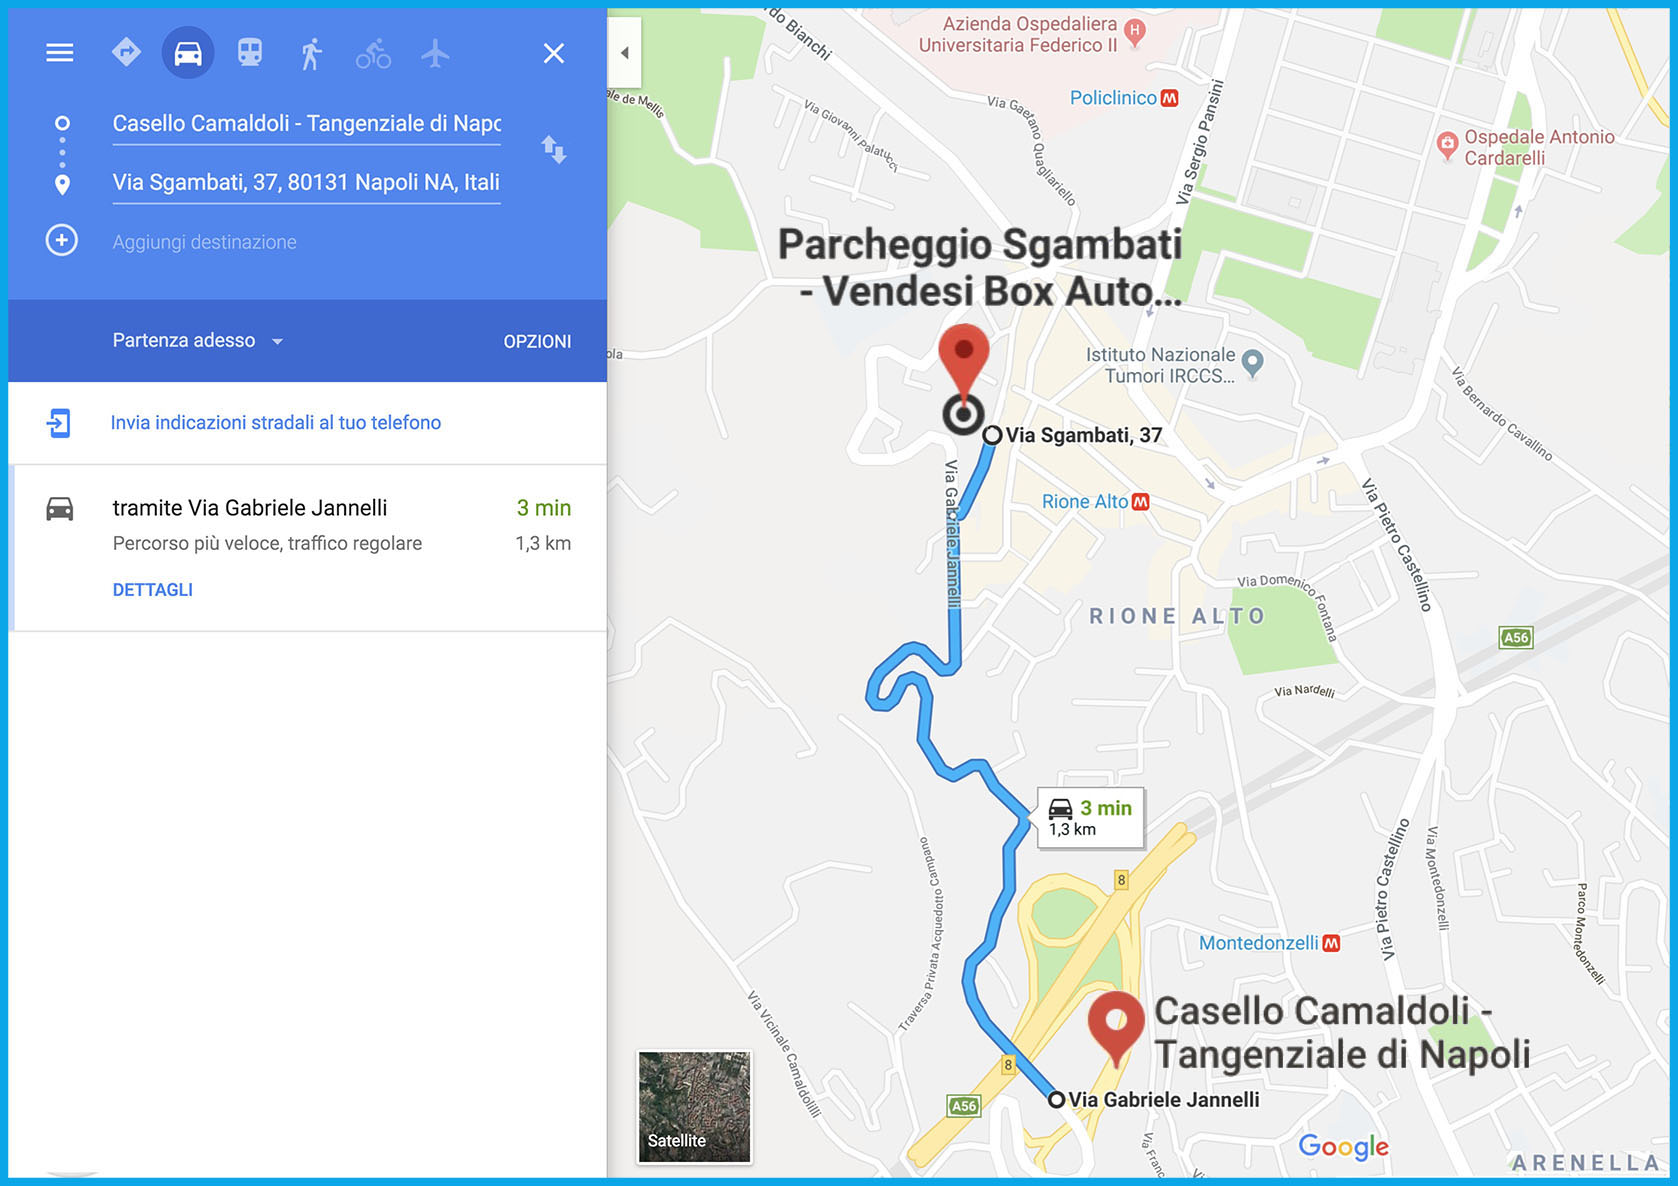 Parcheggio-Sgambati-SuperCentri-Vende-Box-Auto-3 minuti tangenziale